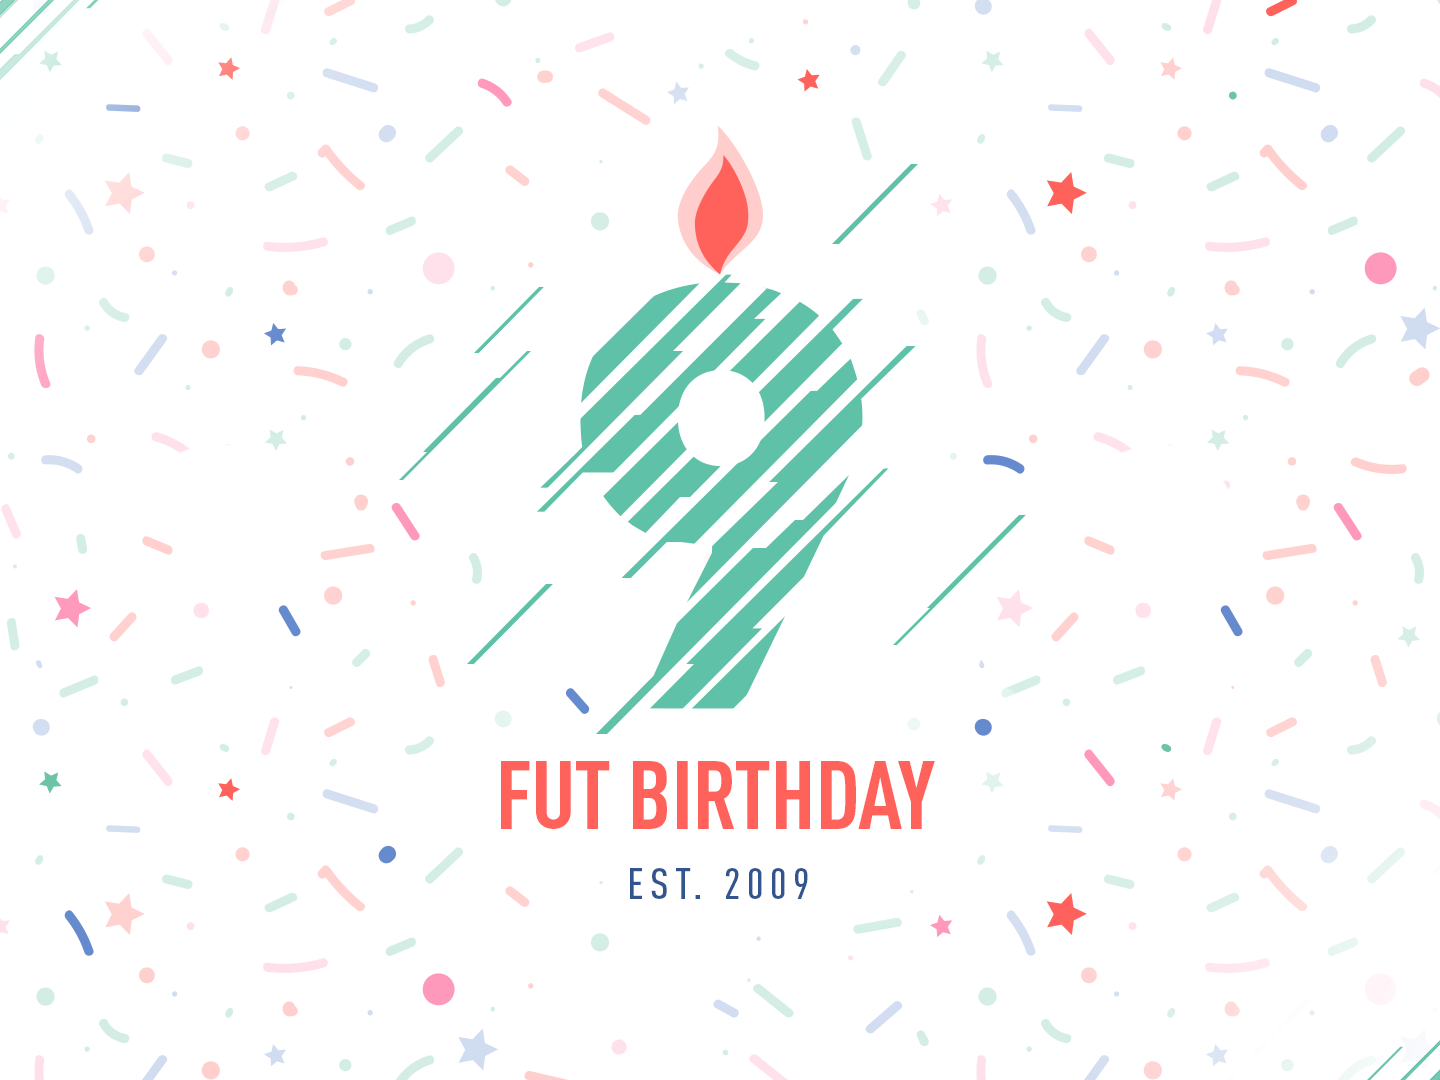 Fut birthday. FUT Birthday логотип.